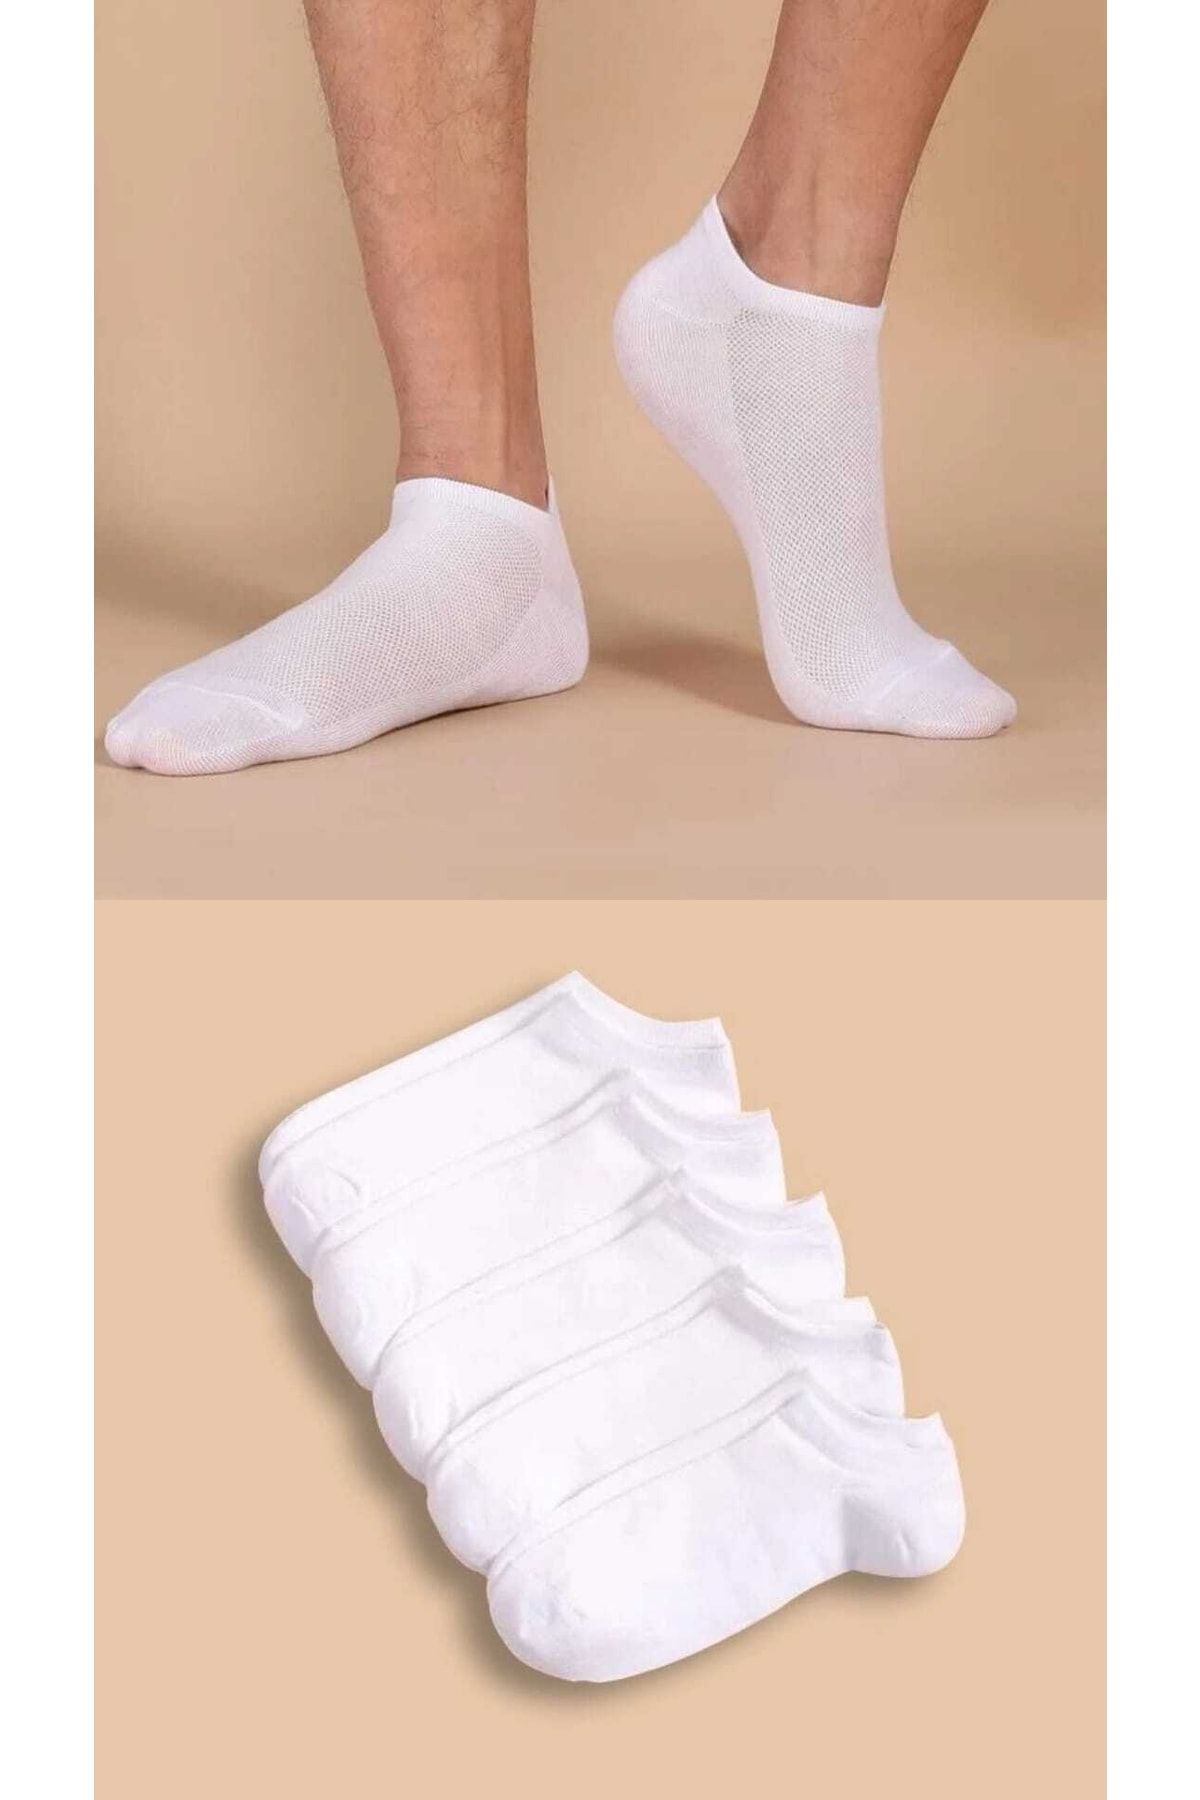 BGK Unisex 5'li Yazlık Patik Çorap